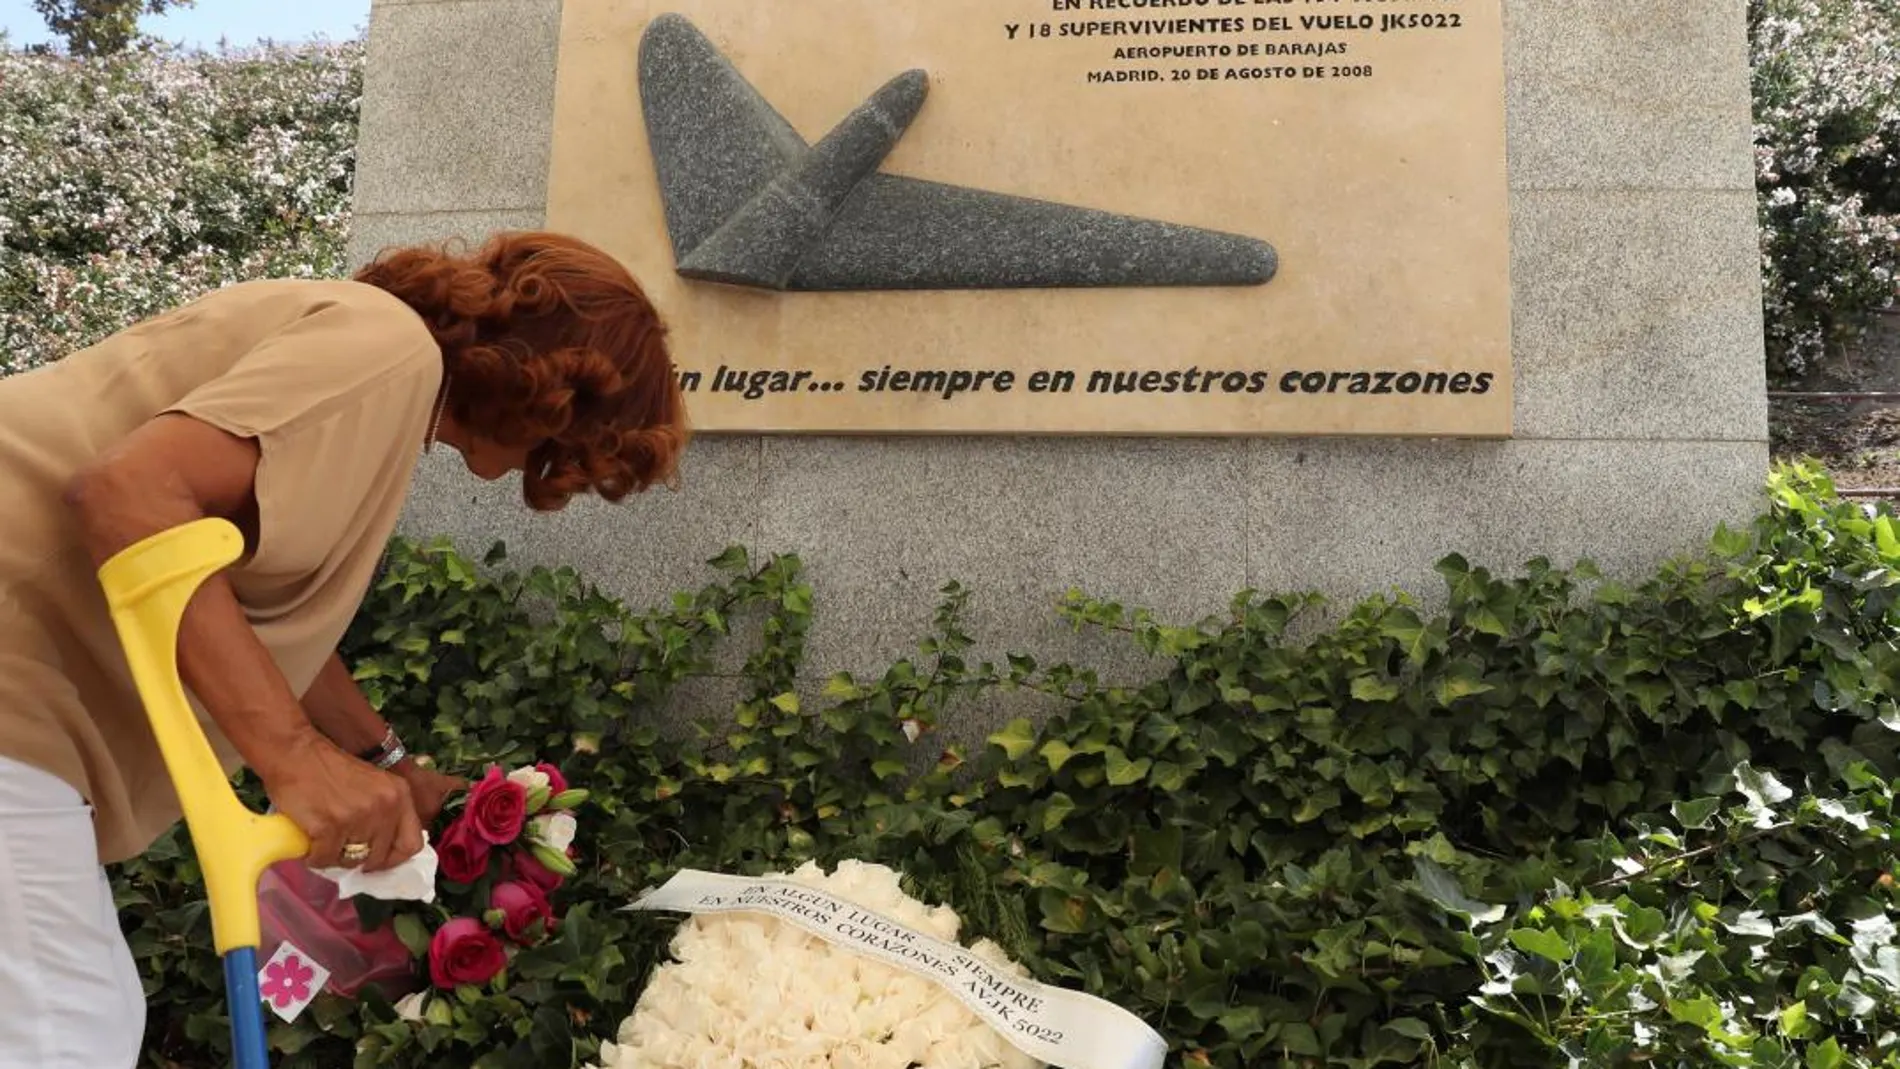 Familiares y allegados depositan ofrendas florales en homenaje a las víctimas del accidente aéreo del vuelo JK5022 de Spanair/Efe